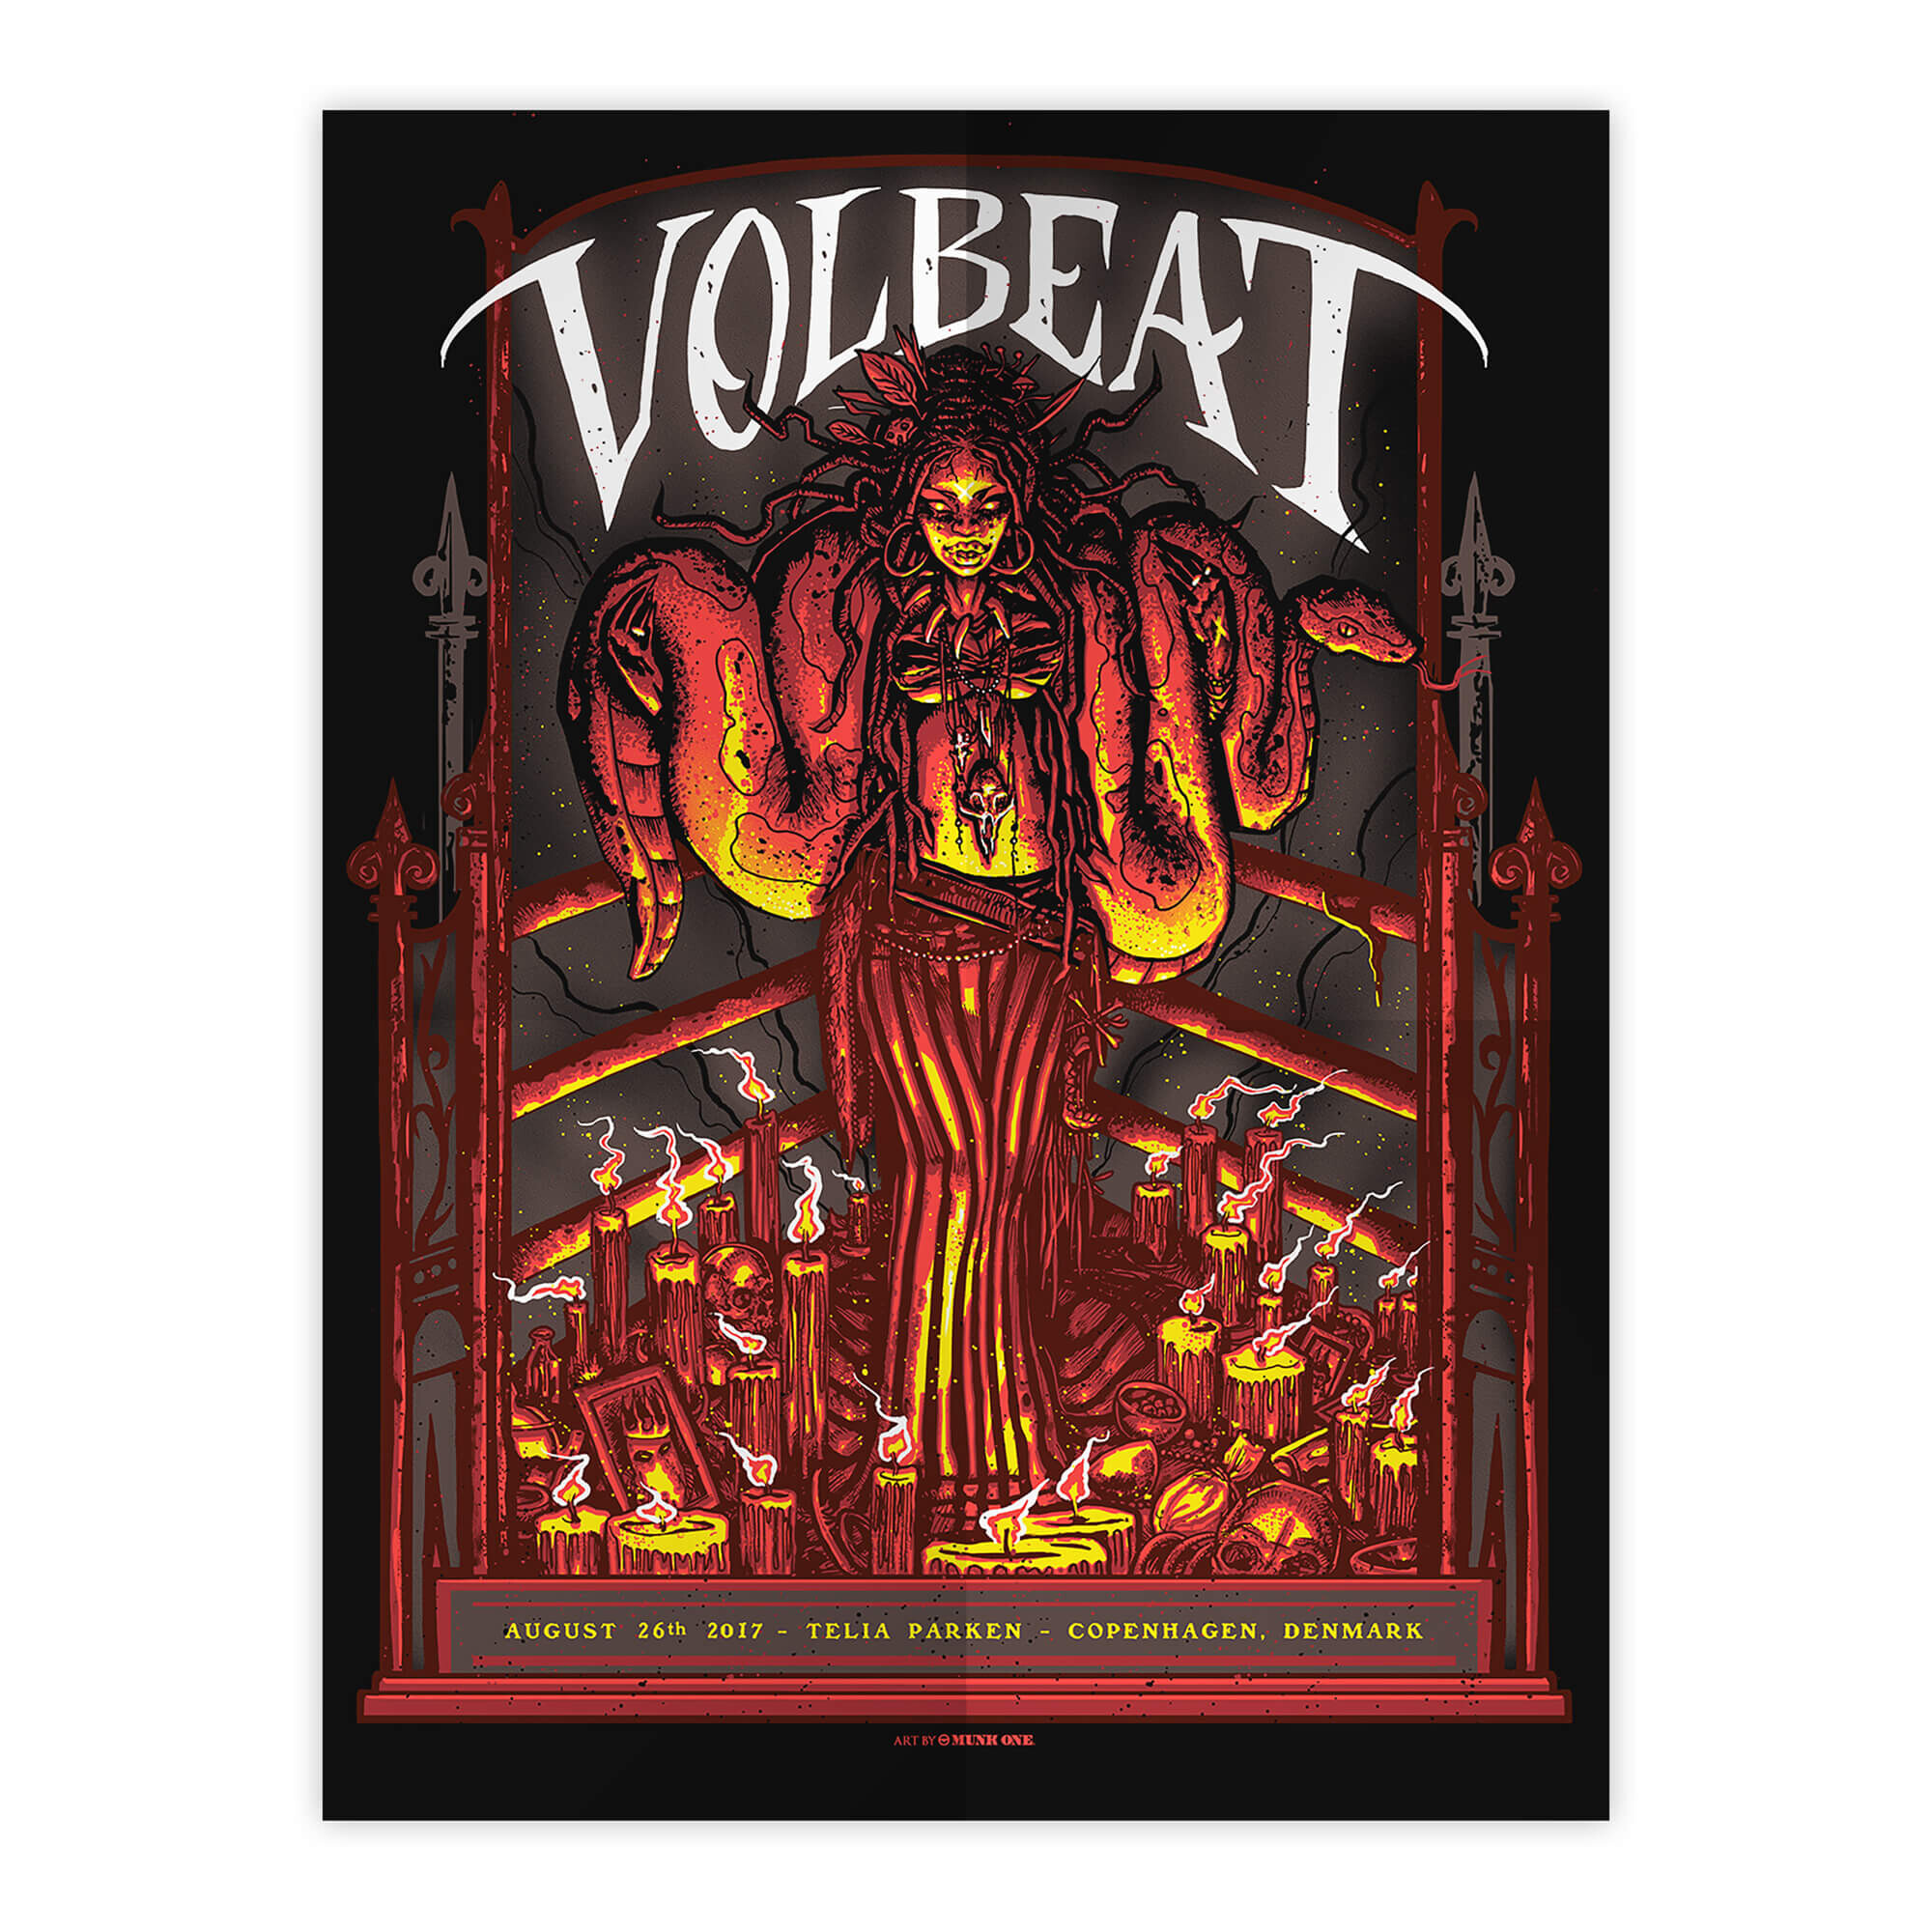 pic of volbeat album